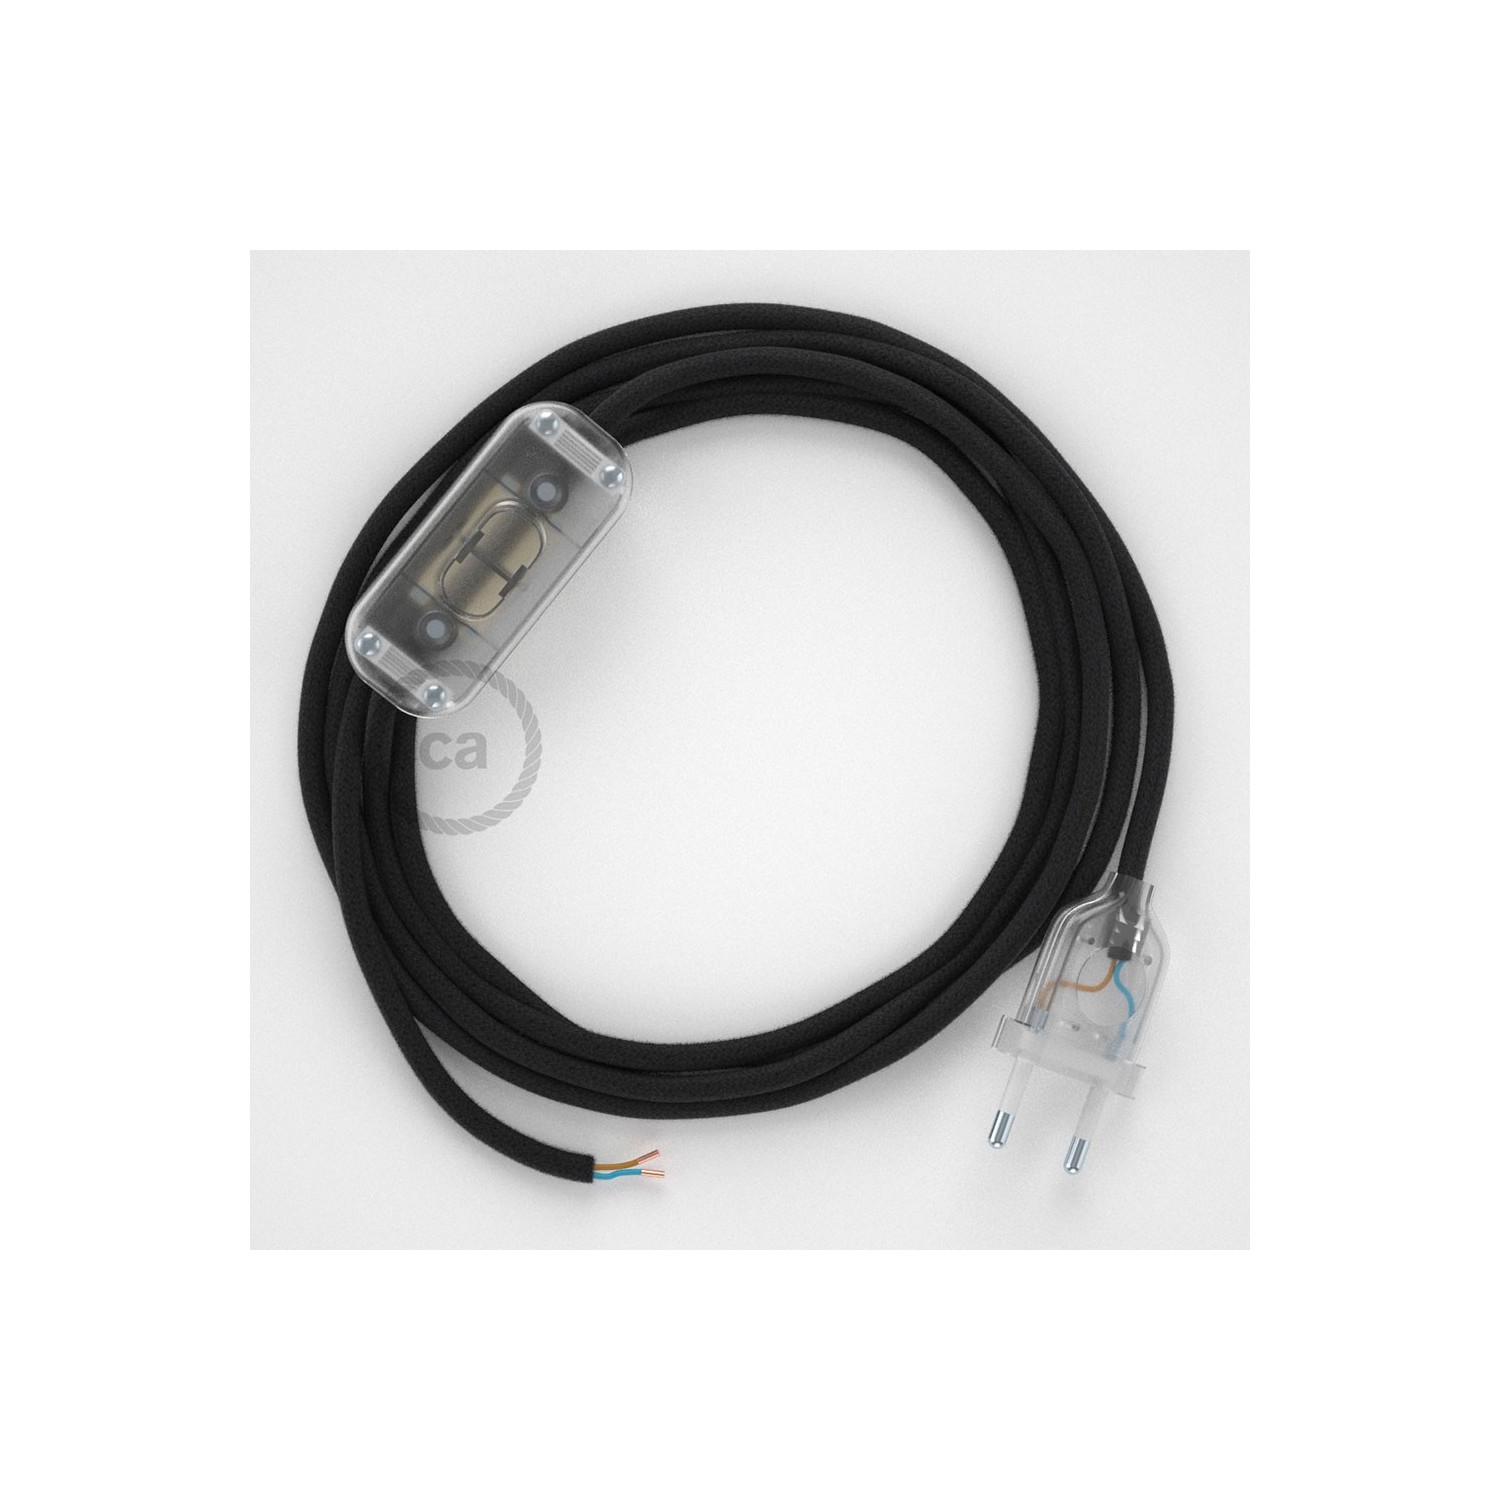 Cableado para lámpara, cable RC04 Algodón Negro 1,8m. Elige tu el color de la clavija y del interruptor!